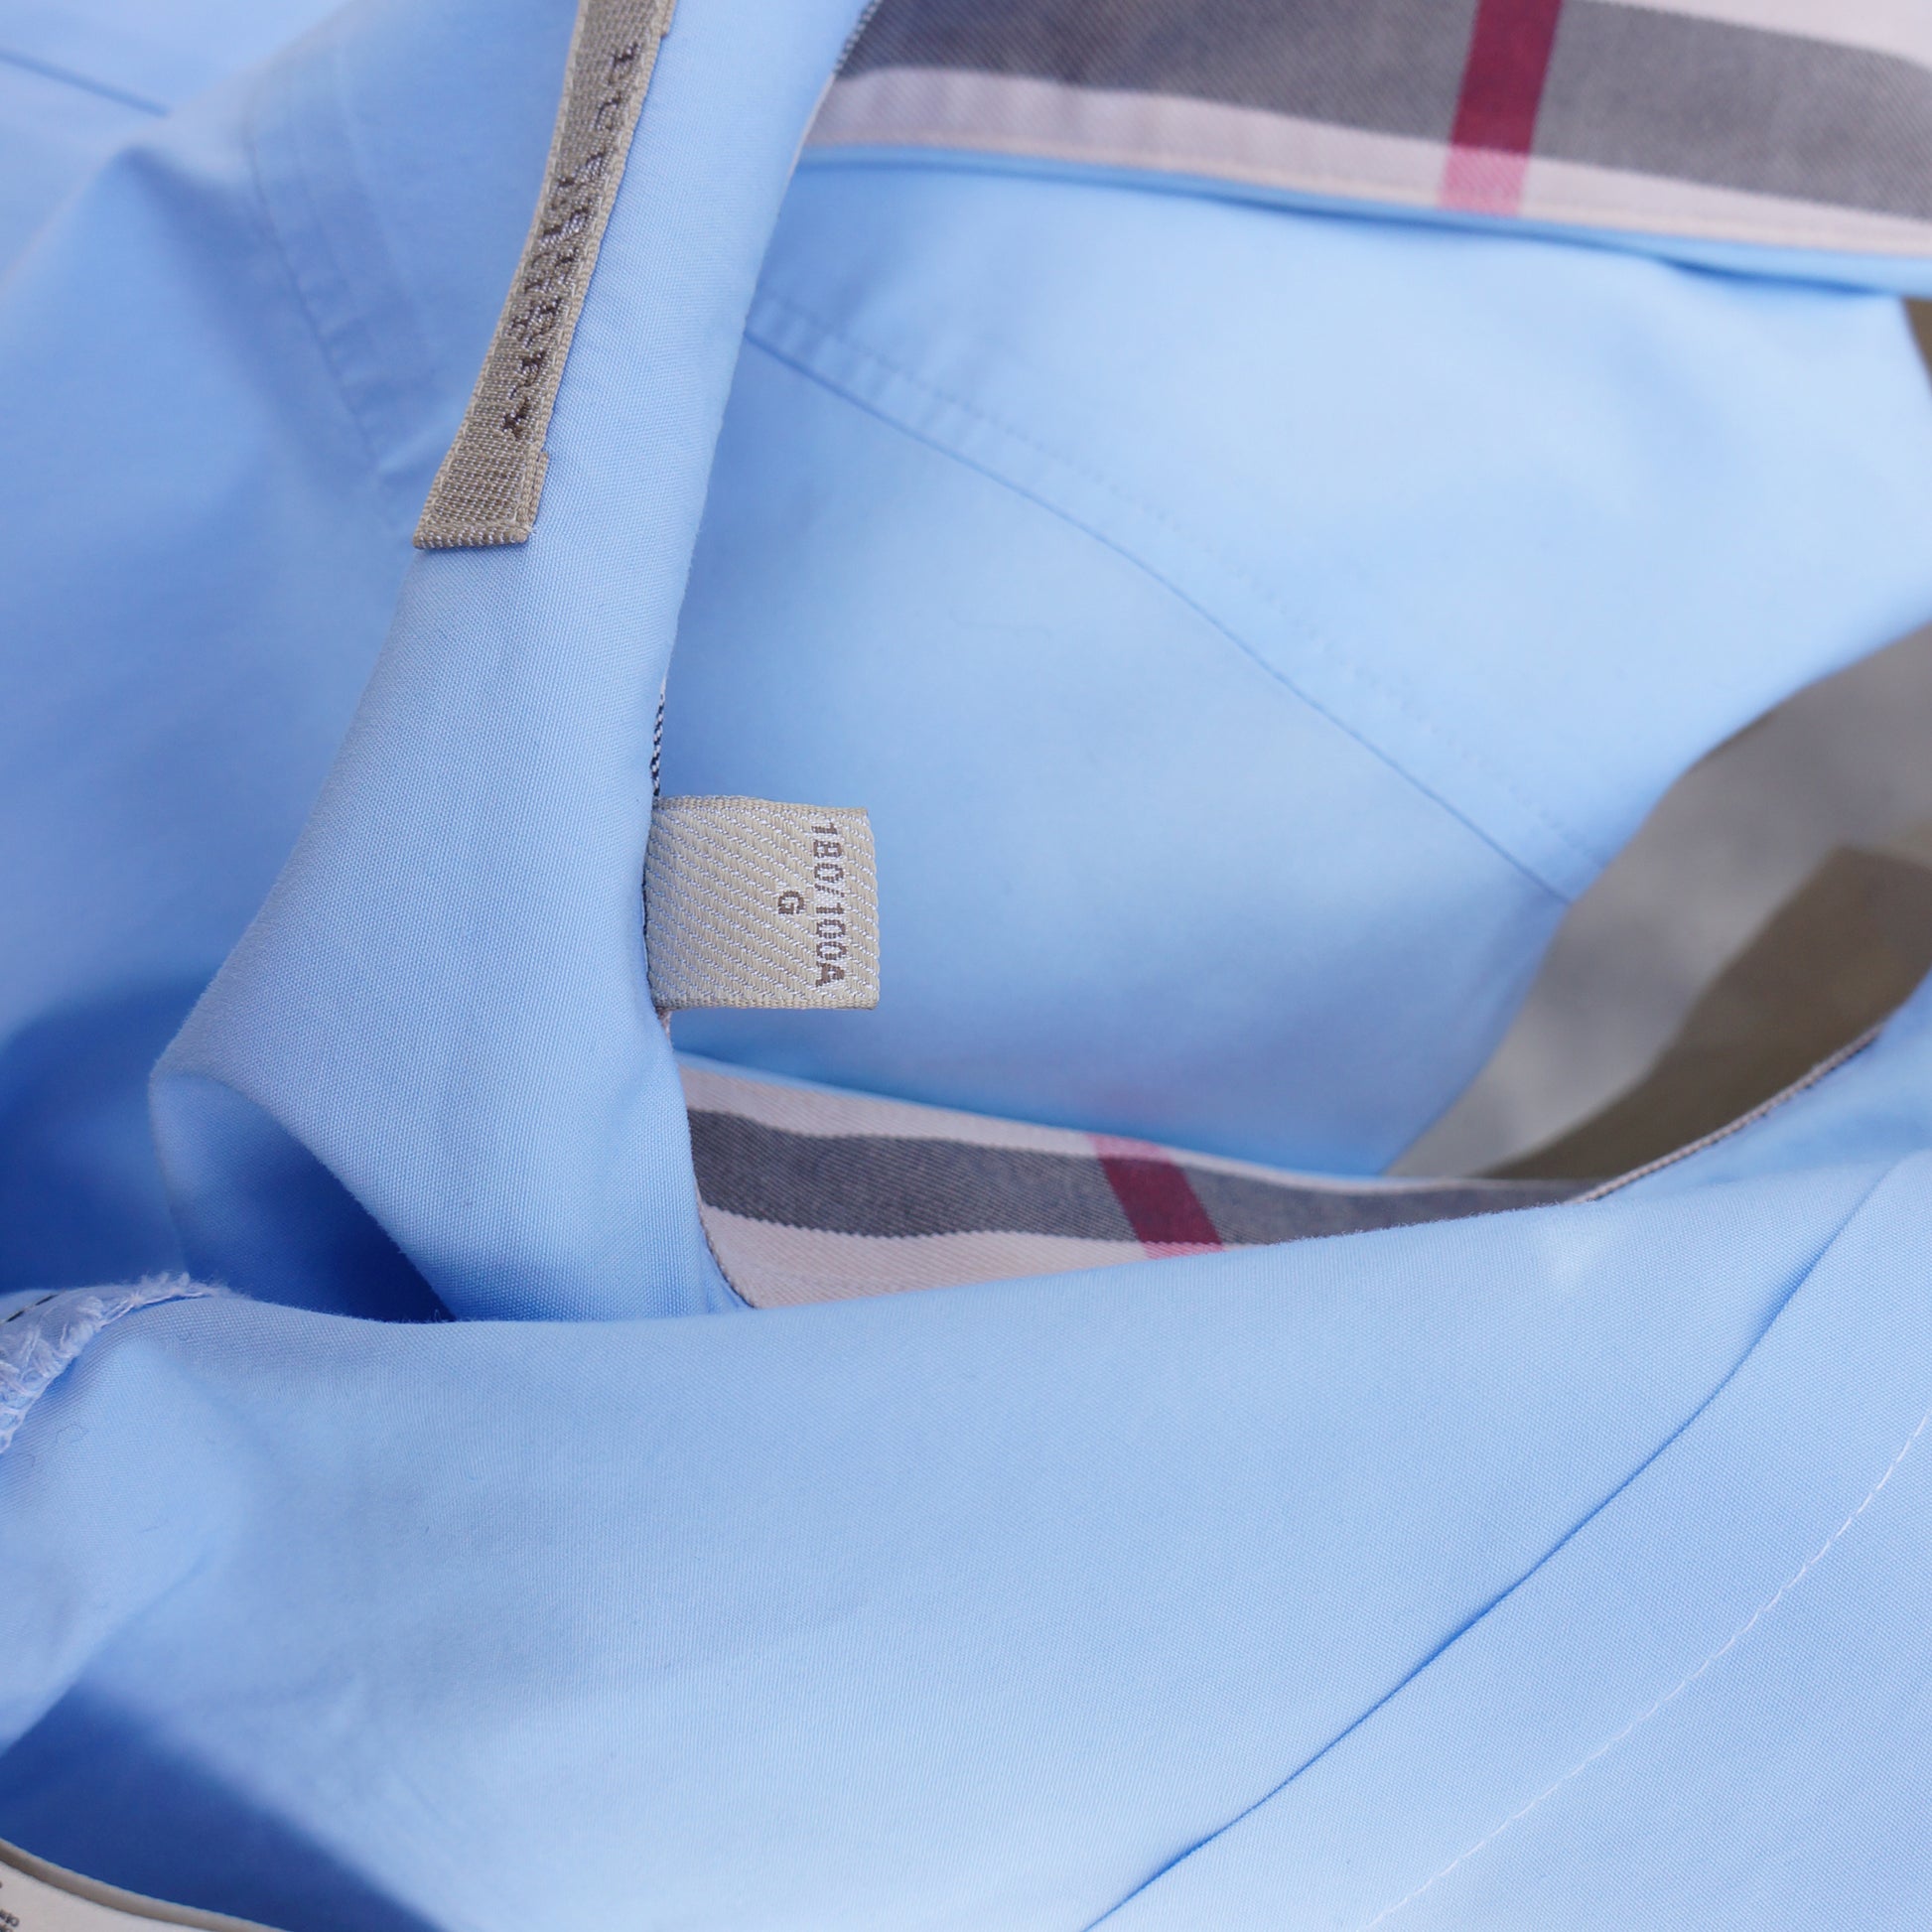 BURBERRY BRIT BLUE WOVEN CLASSIC DRESS SHIRT - leefluxury.com